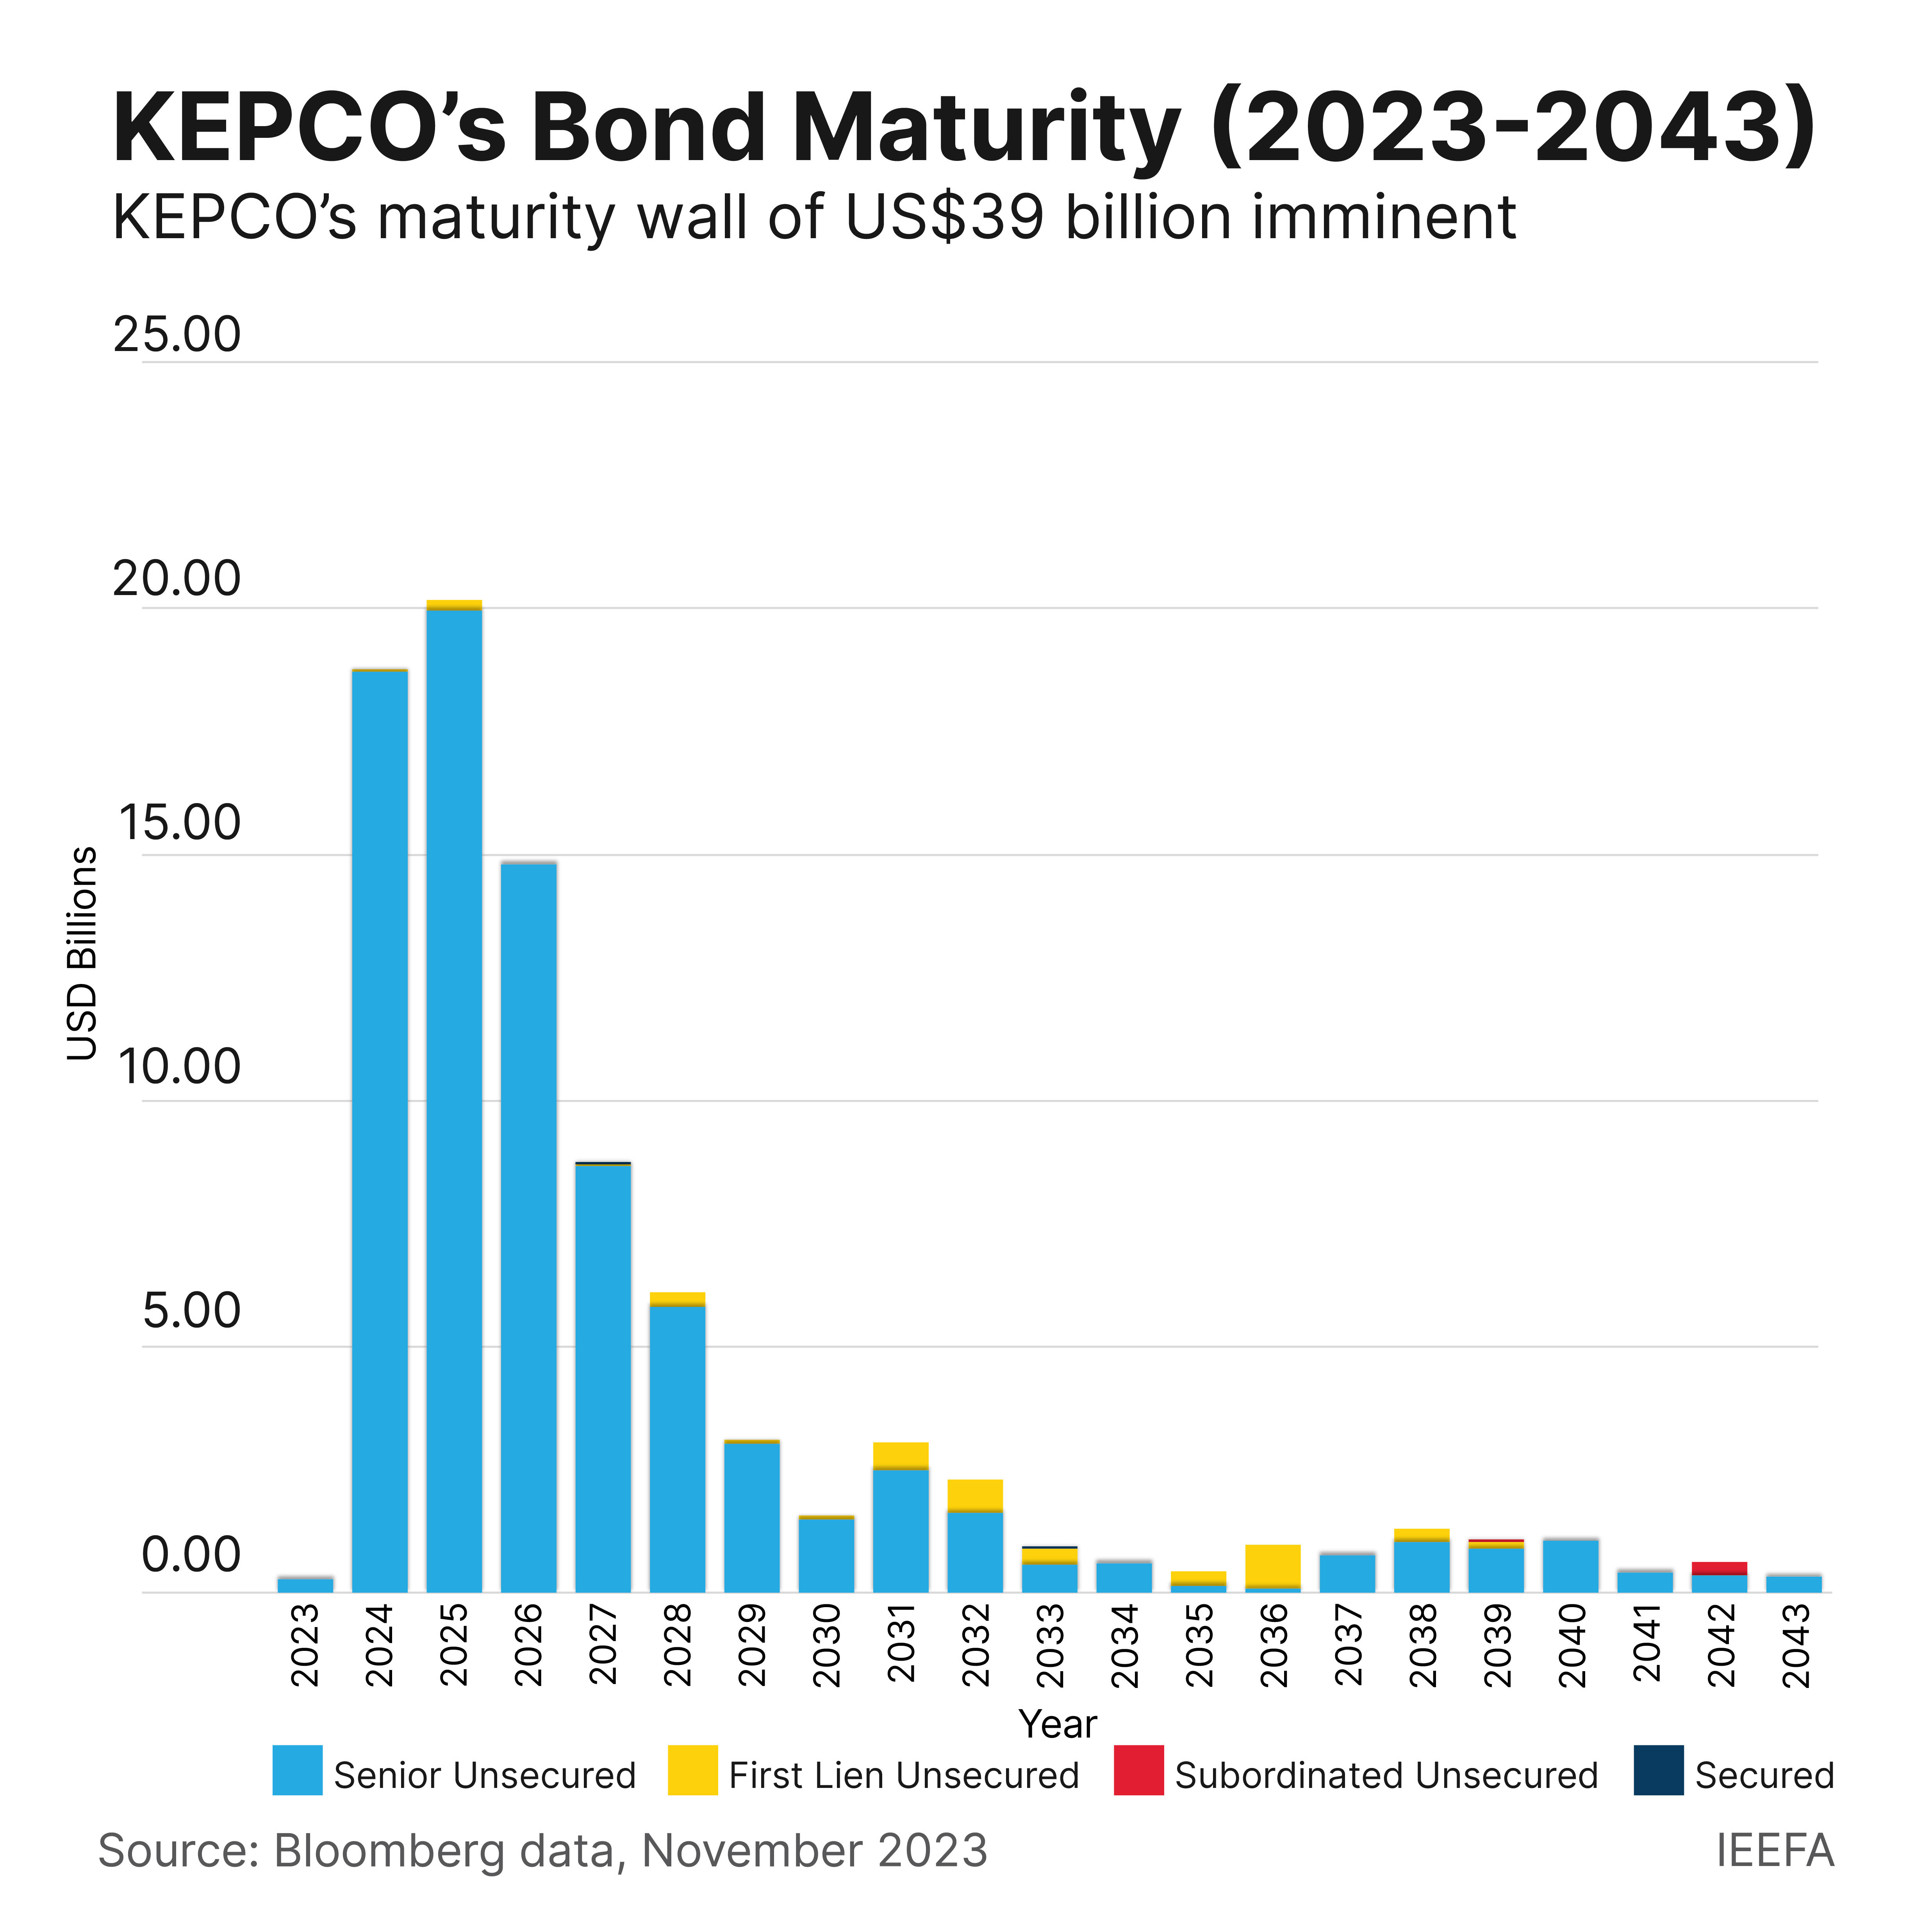 KEPCO Bond Maturity 2023-2043